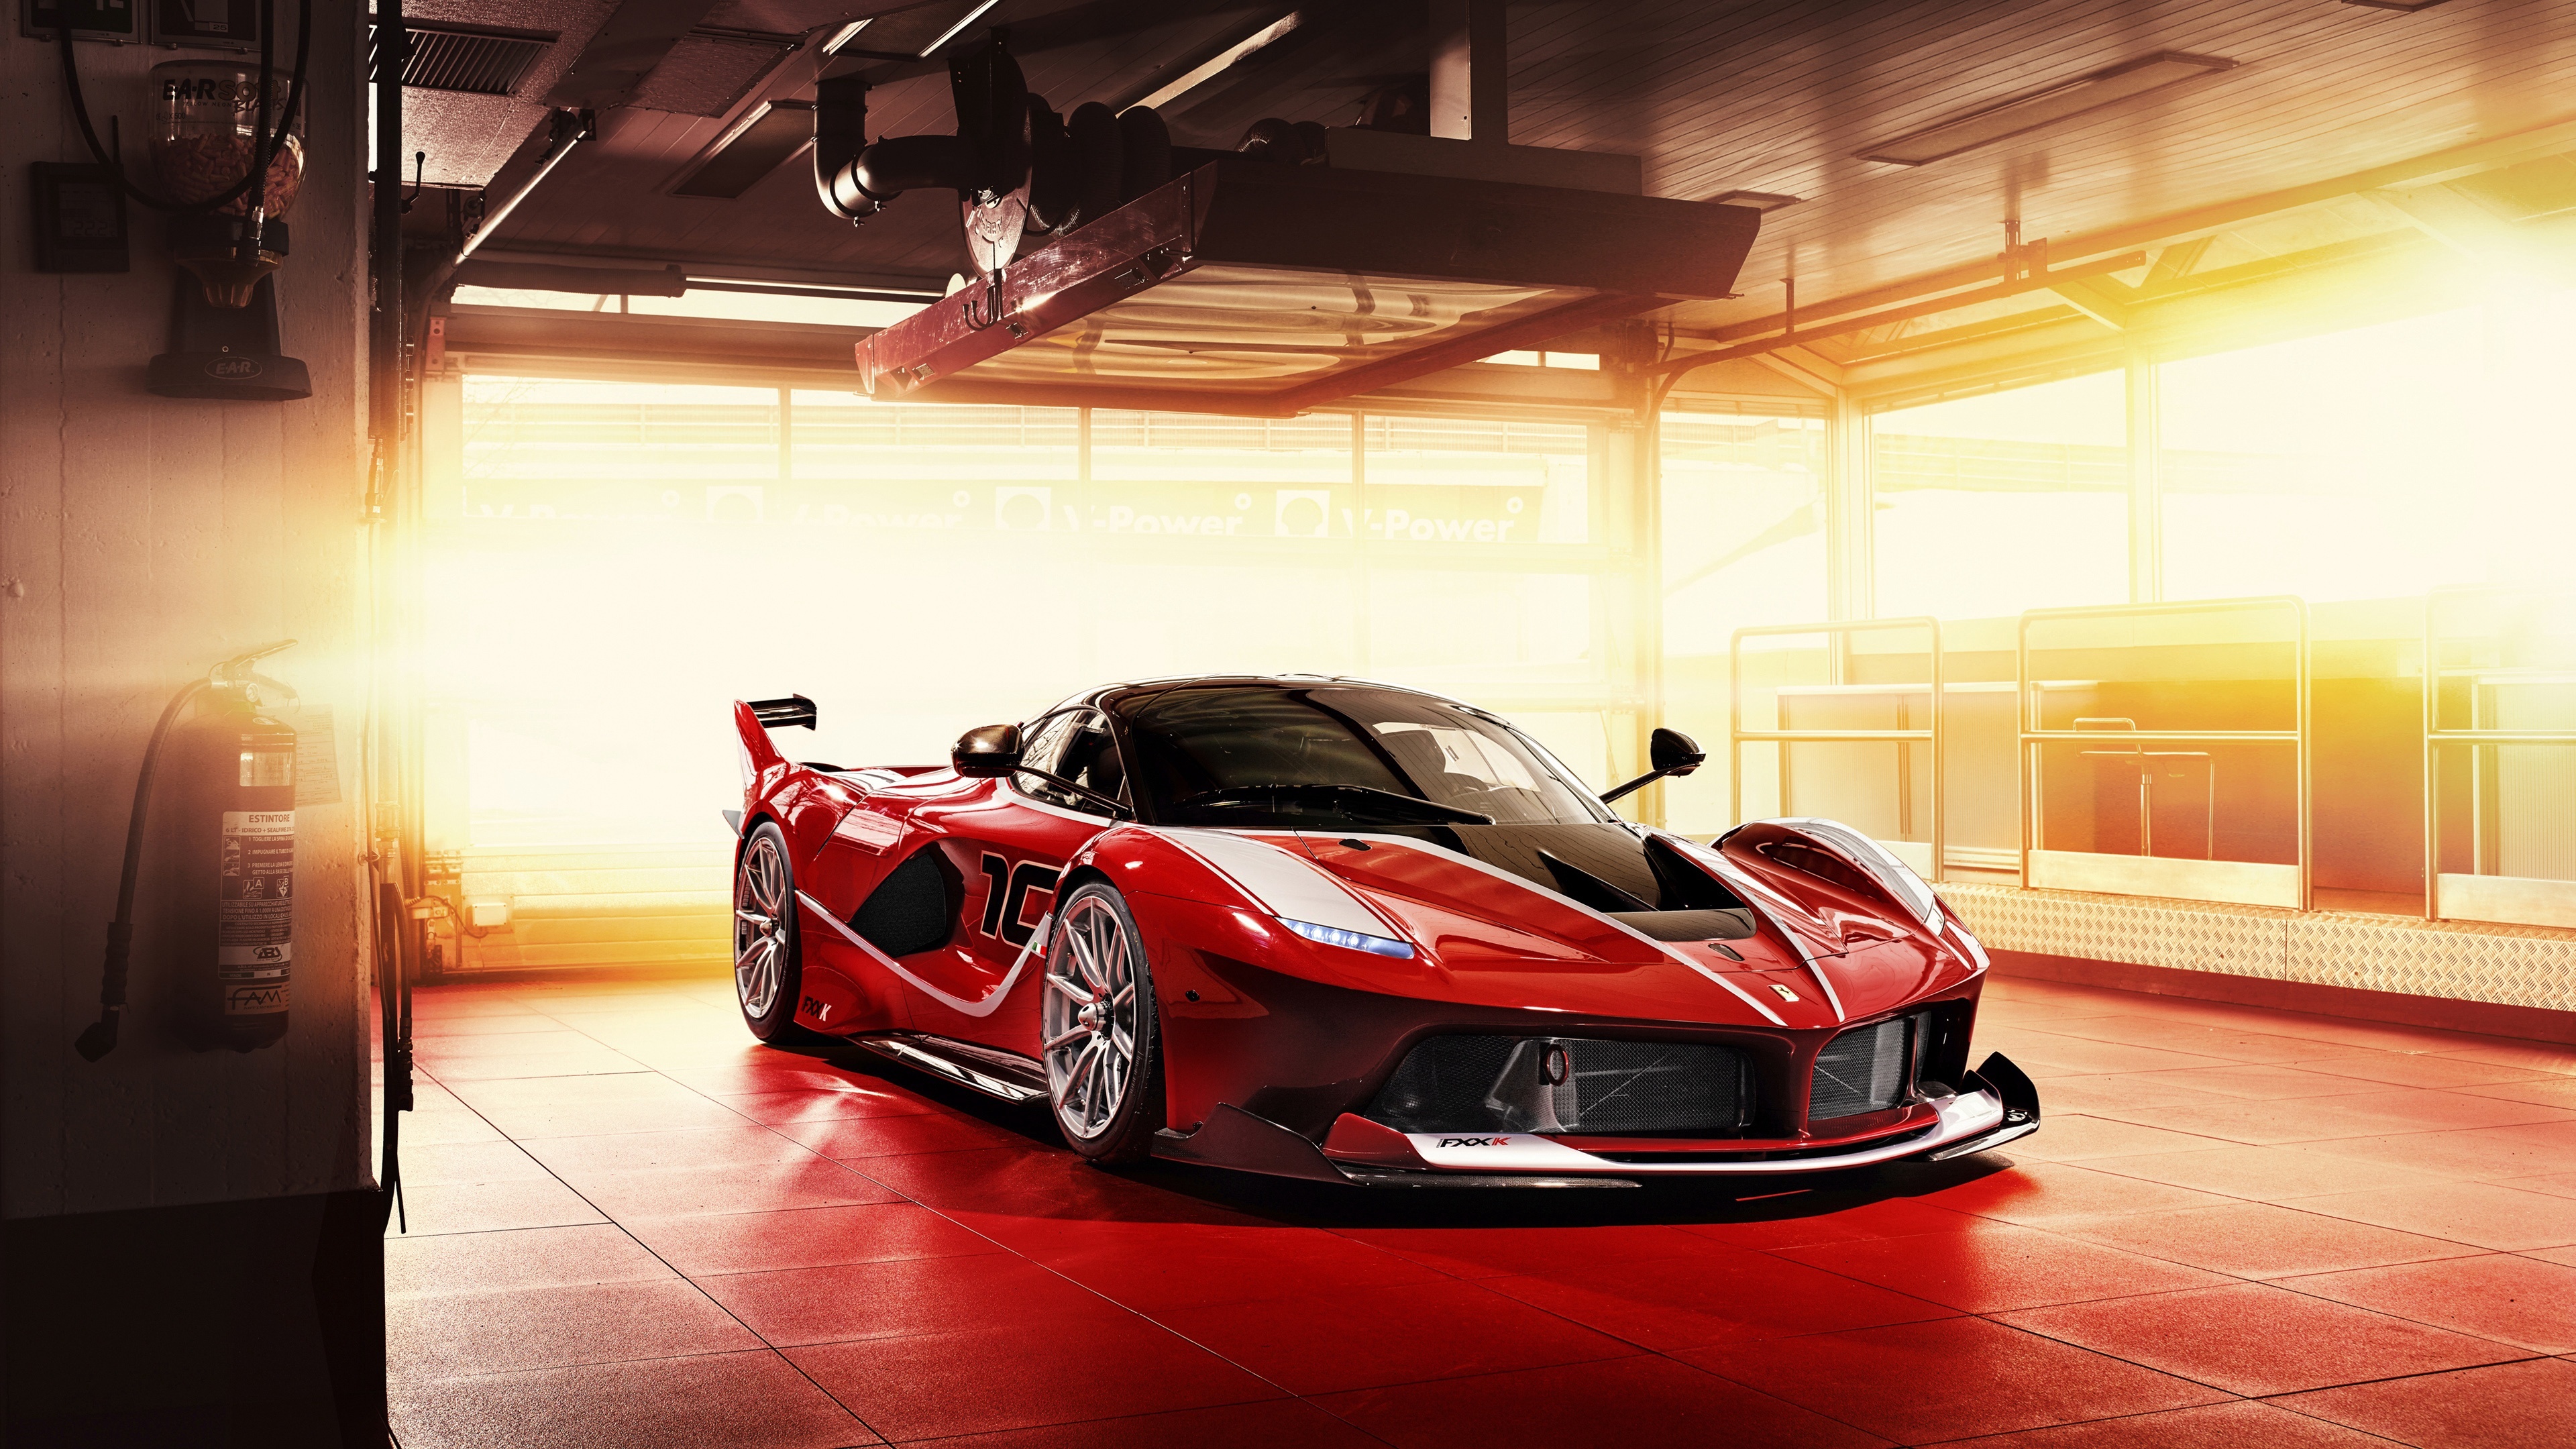 Ferrari Fxx Wallpaper HD Auto For Pc